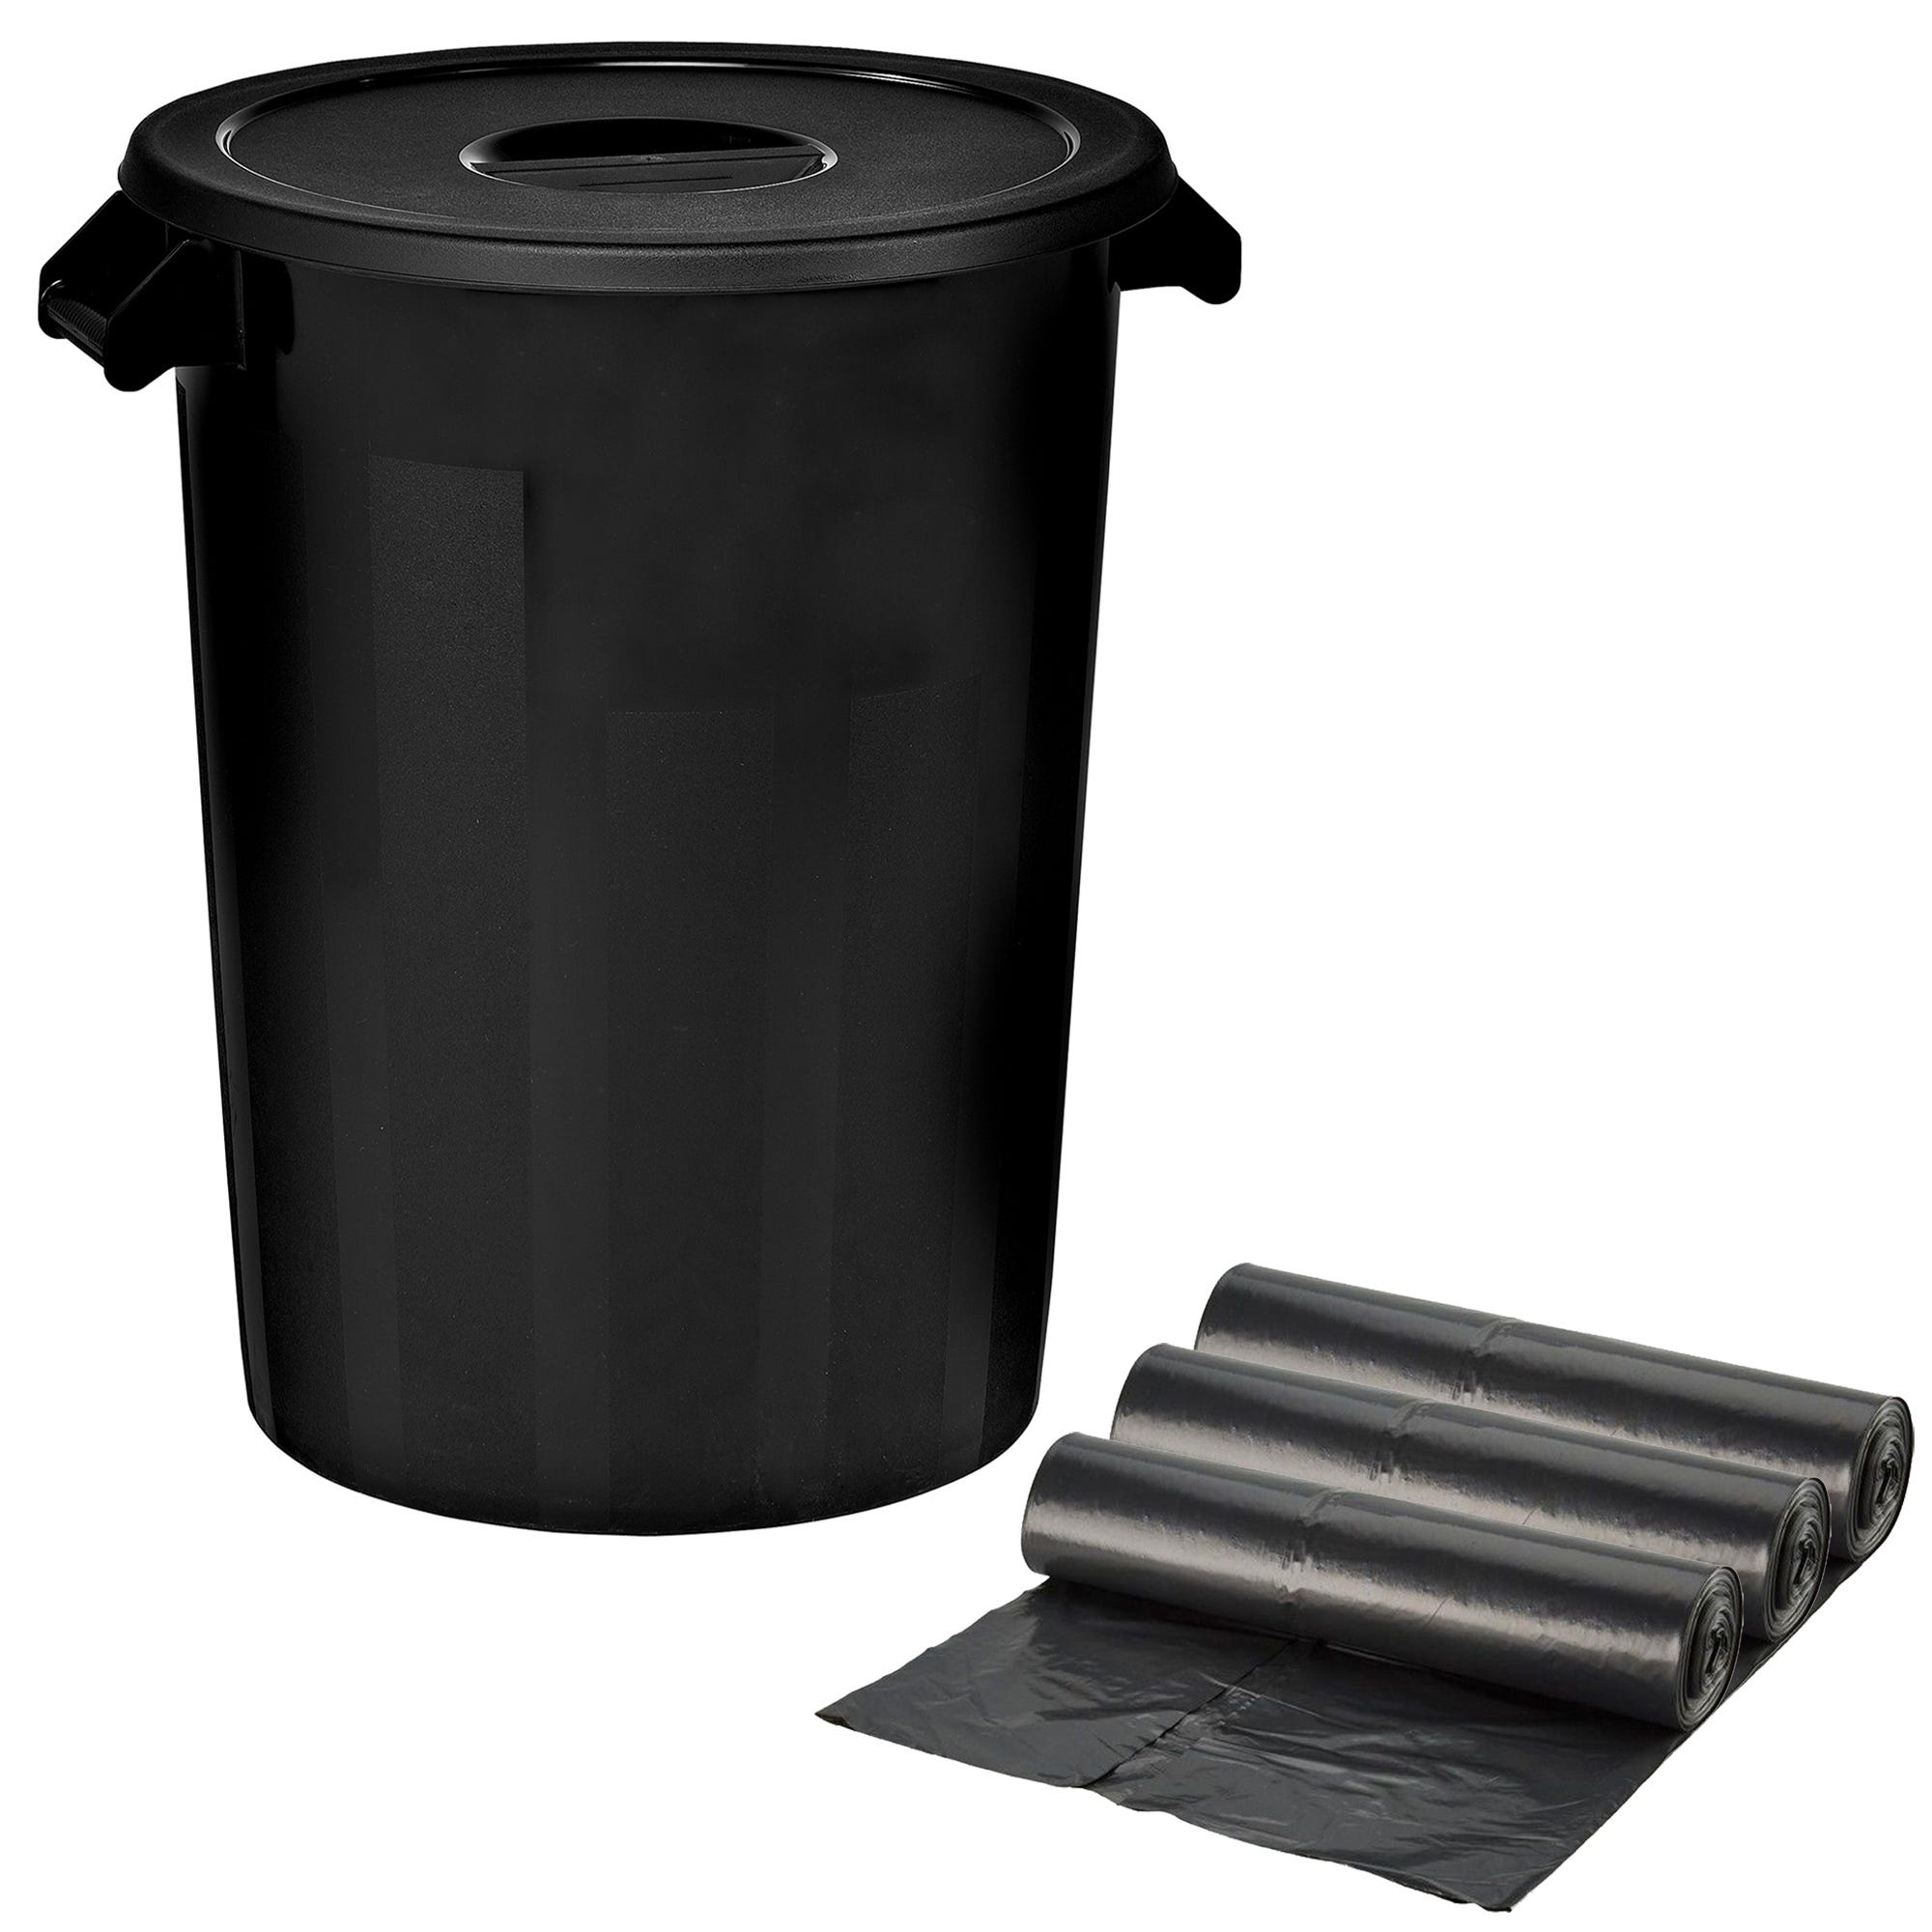 Cubo basura plástico negro grande 100 litros